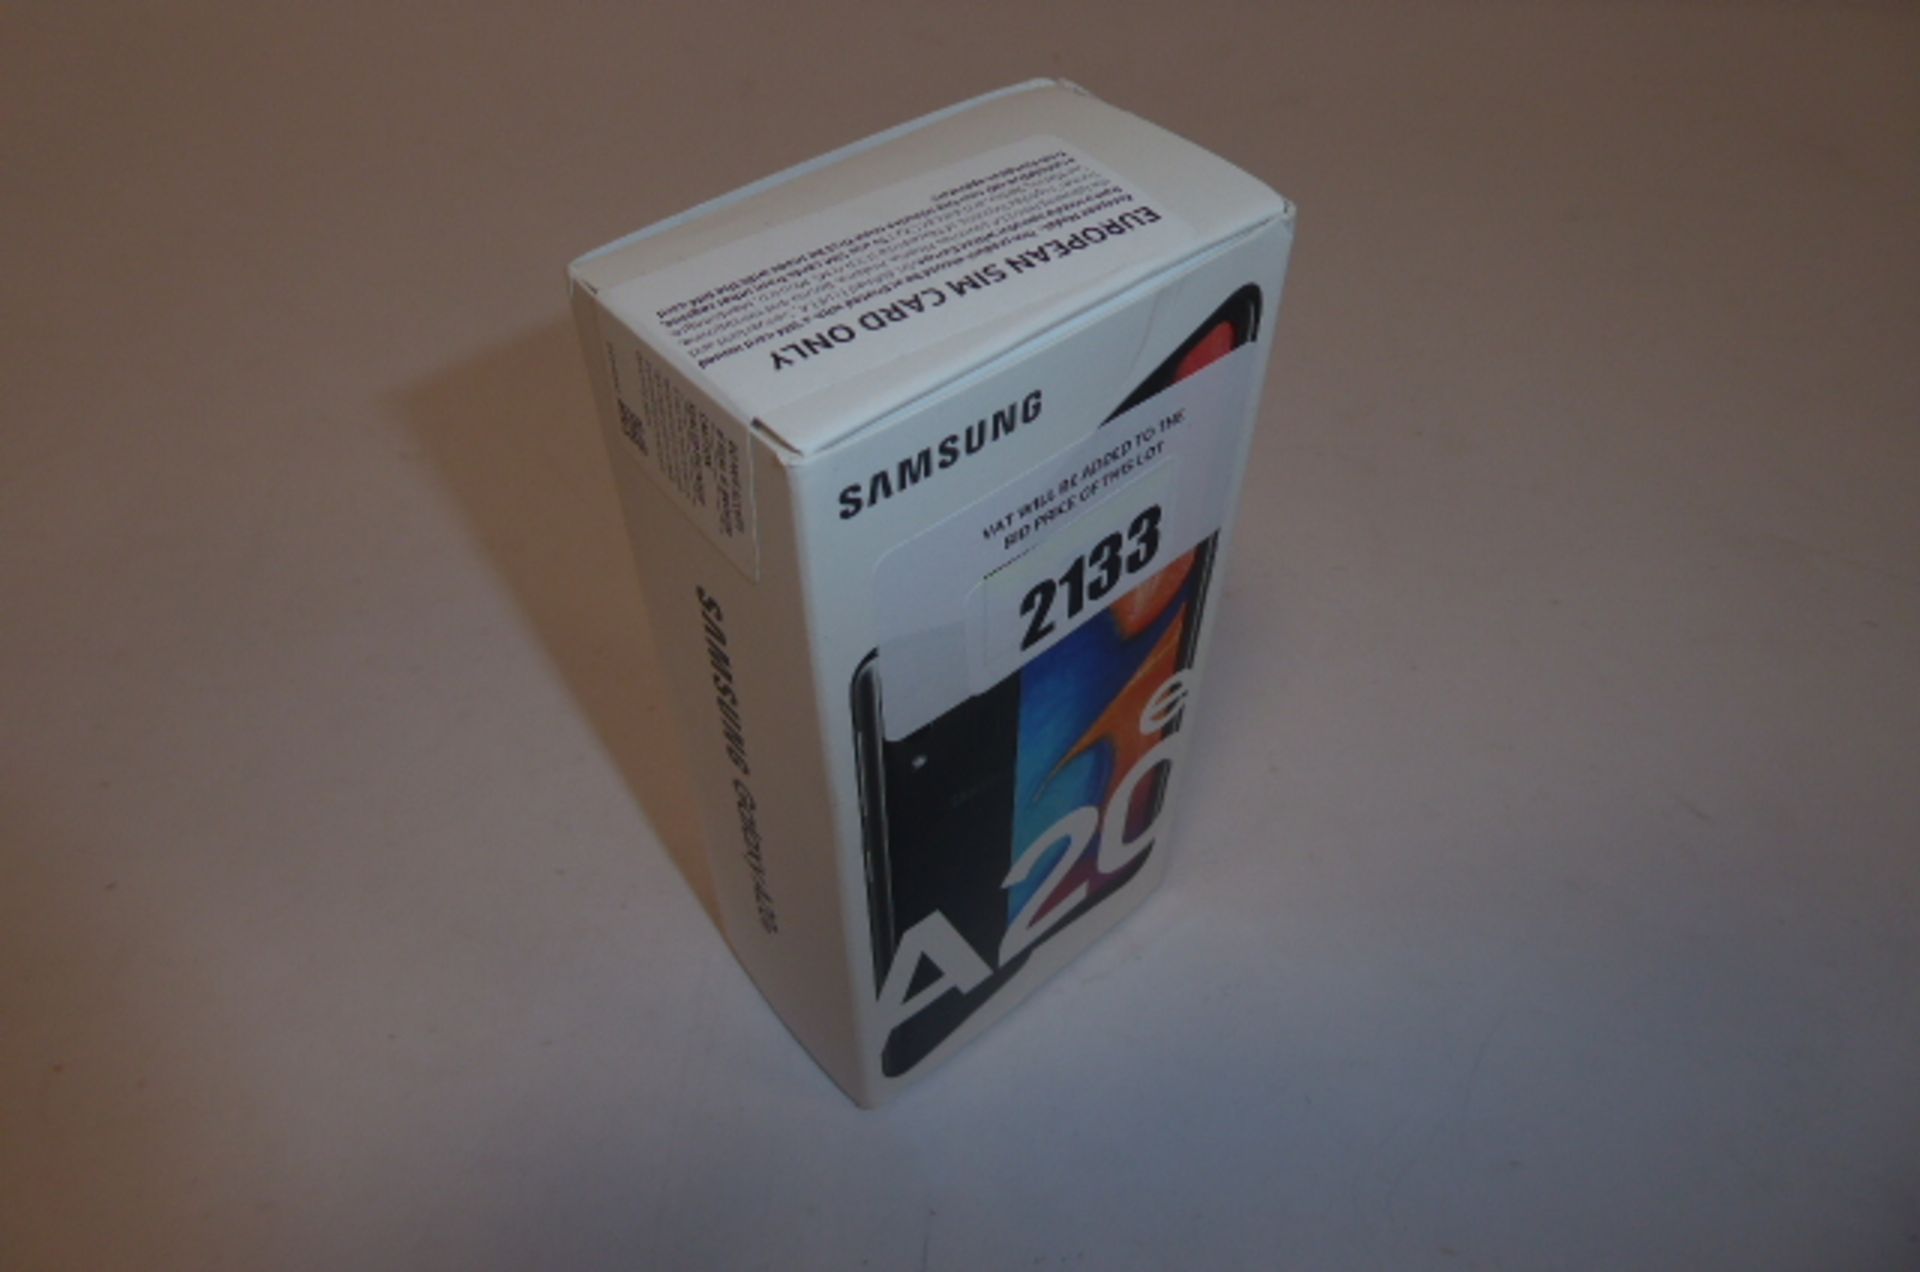 Samsung A20e Mobile 32gb, in sealed box.